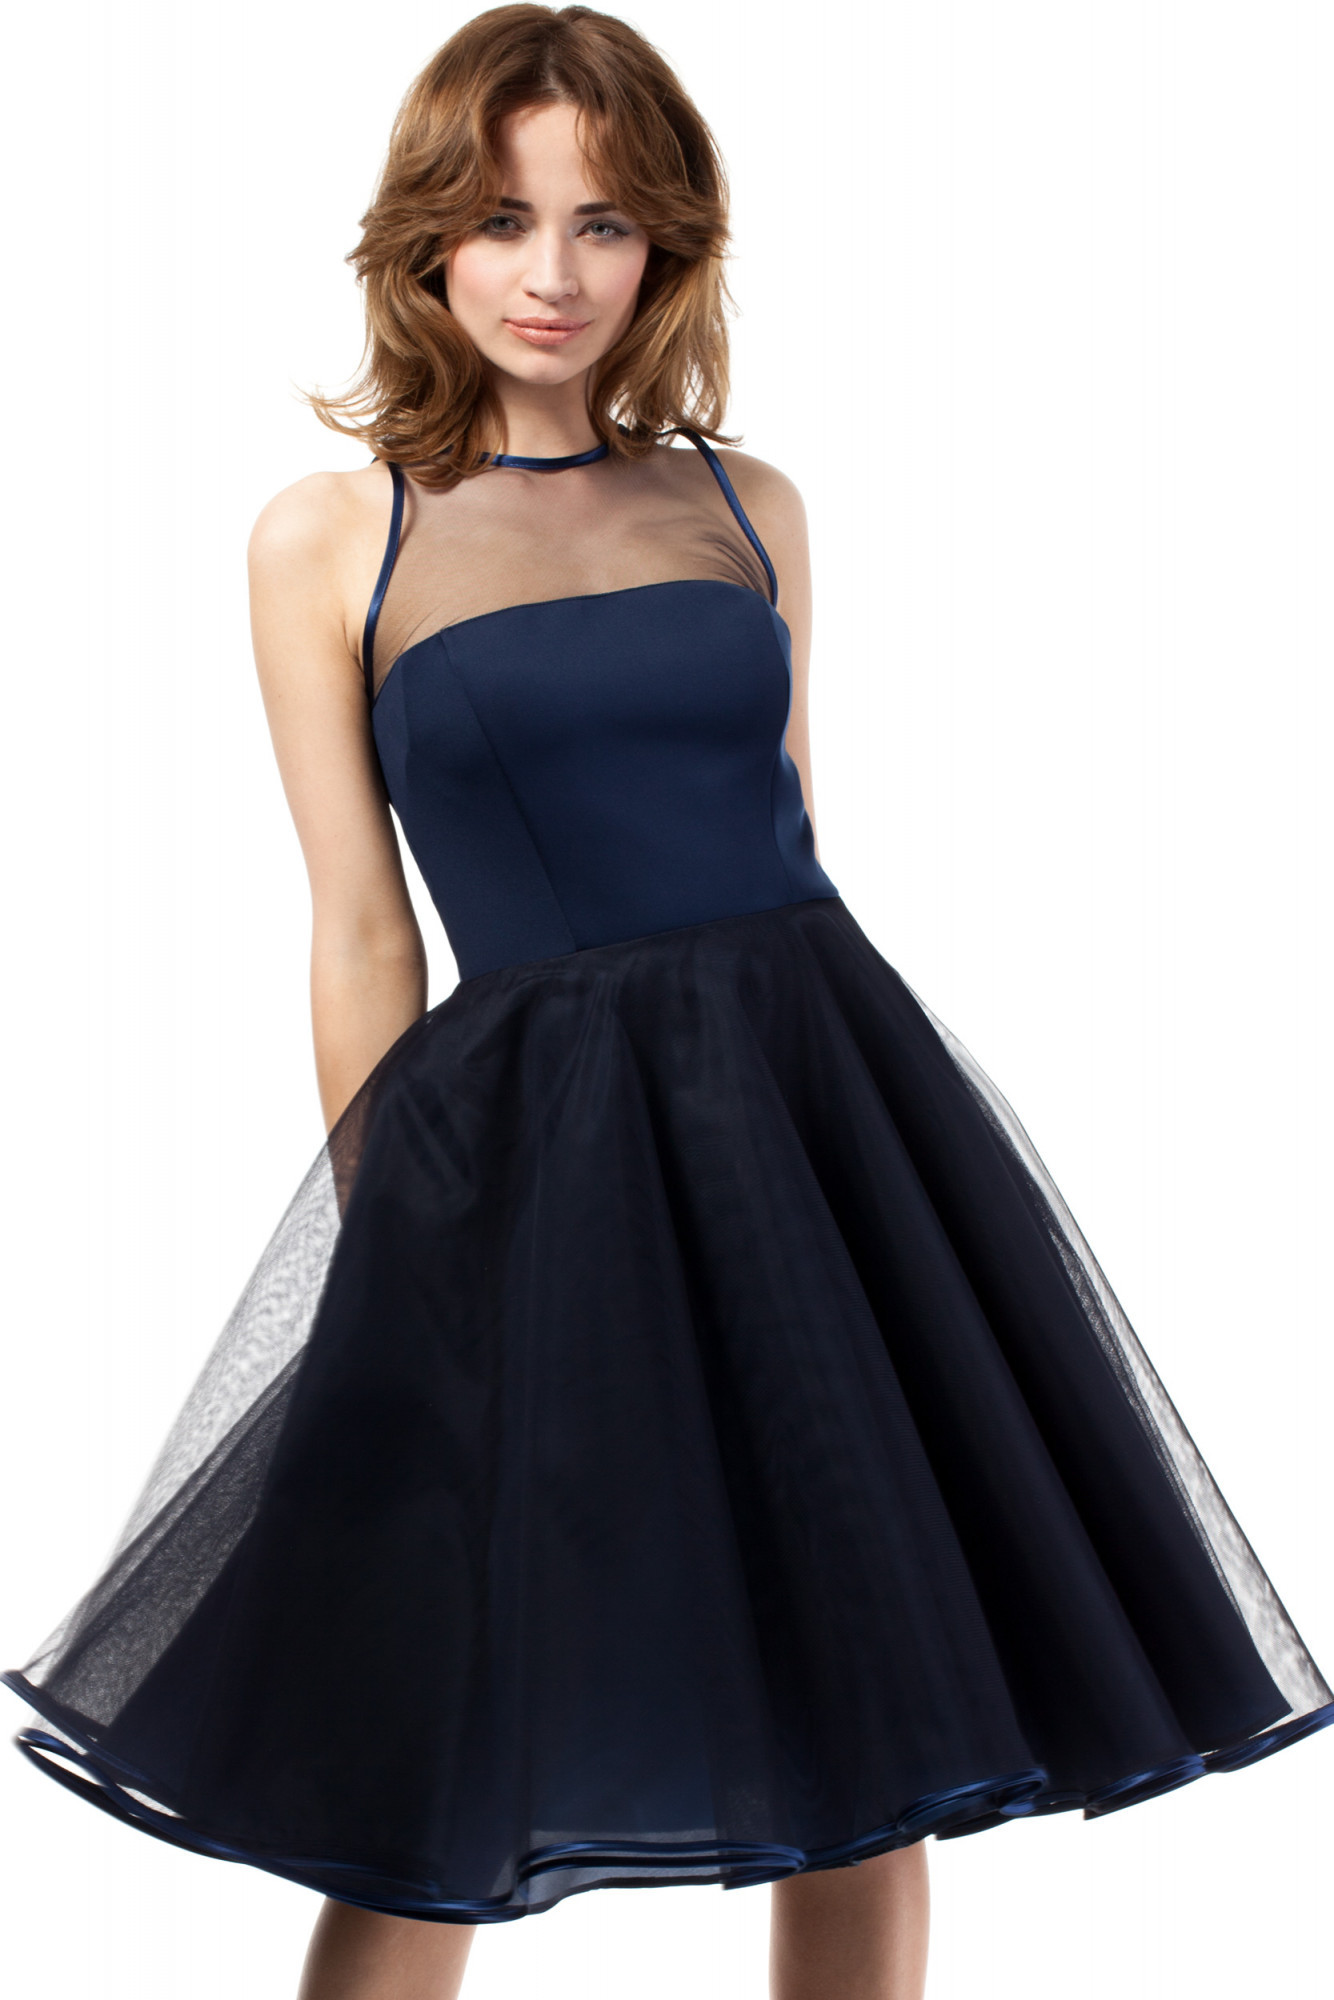 Dámské večerní šaty model 18140421 černá S36 - Moe